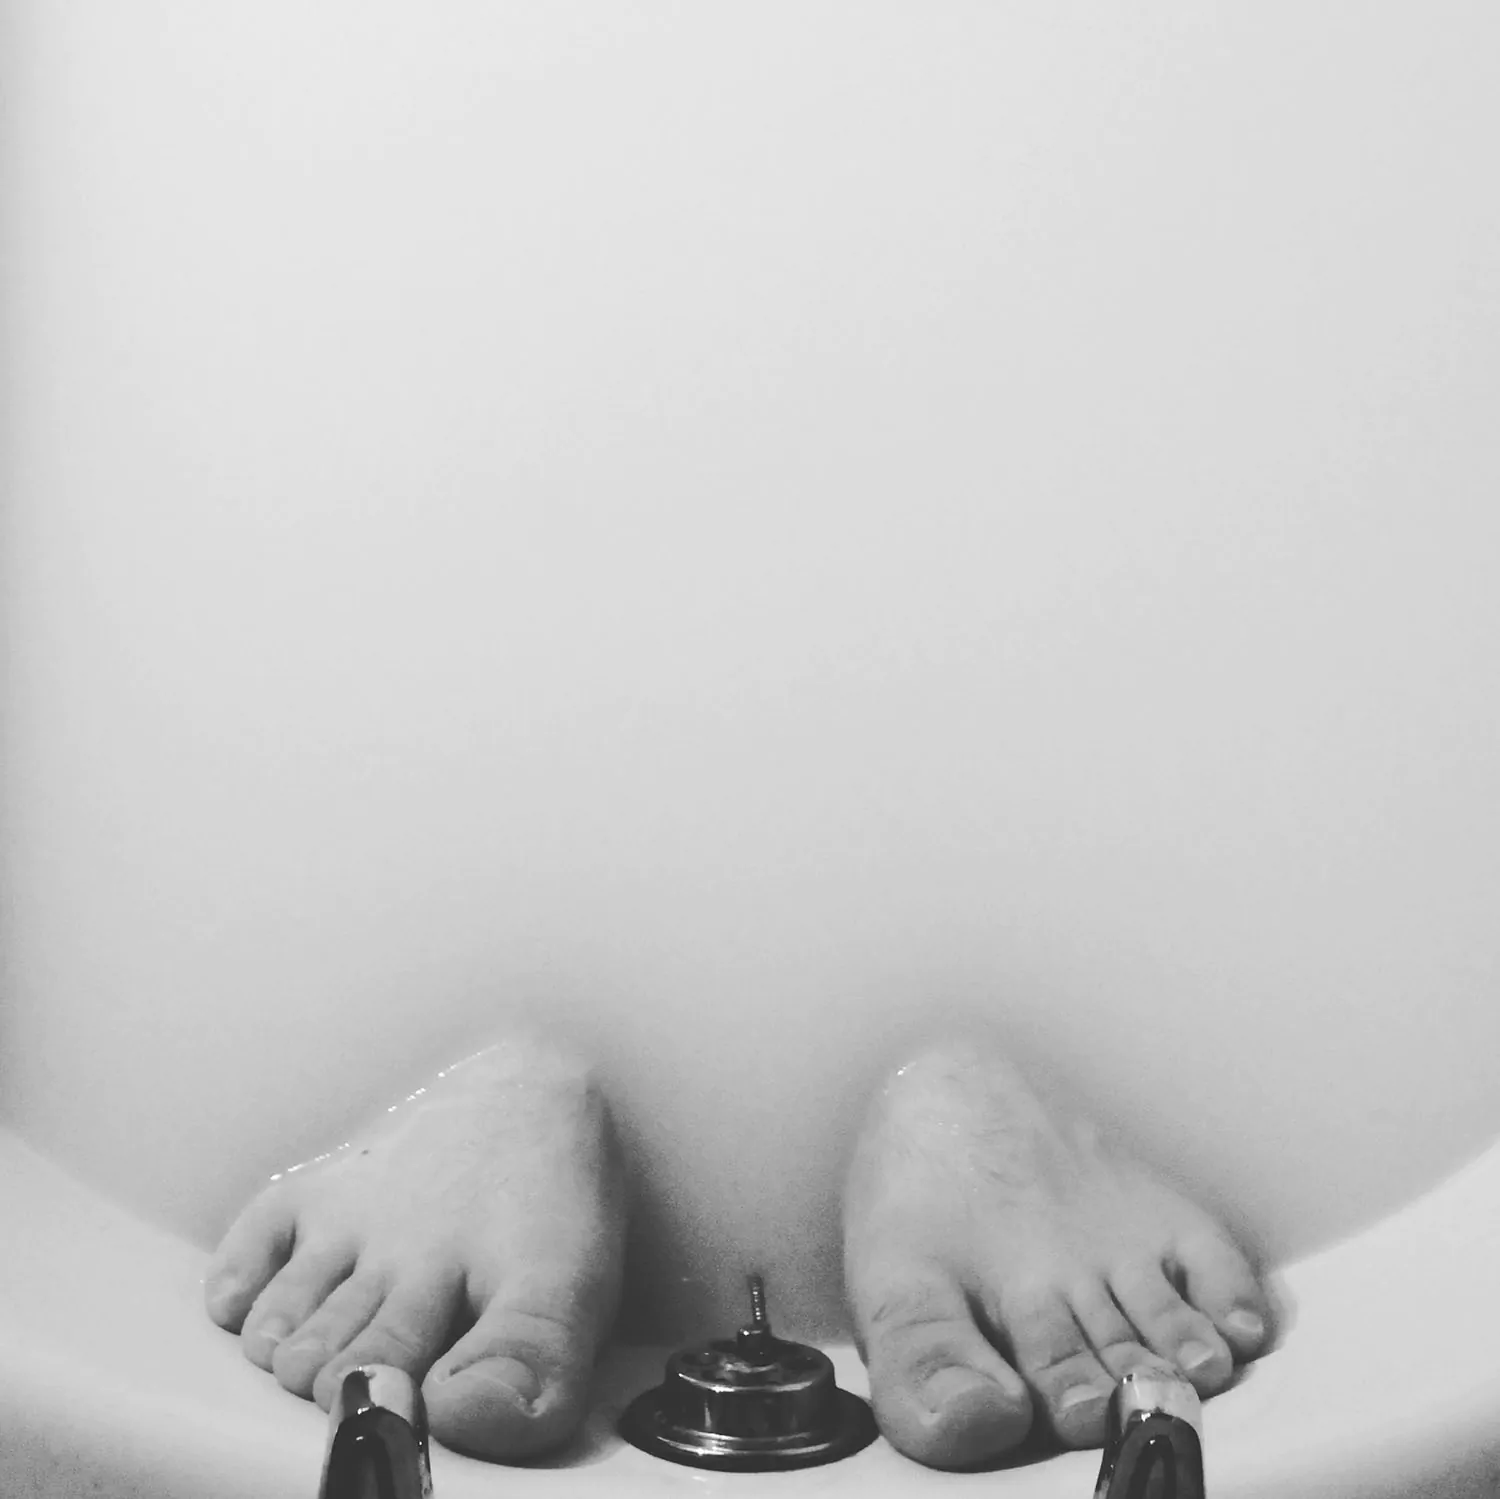 Feet submerged in a milky bath